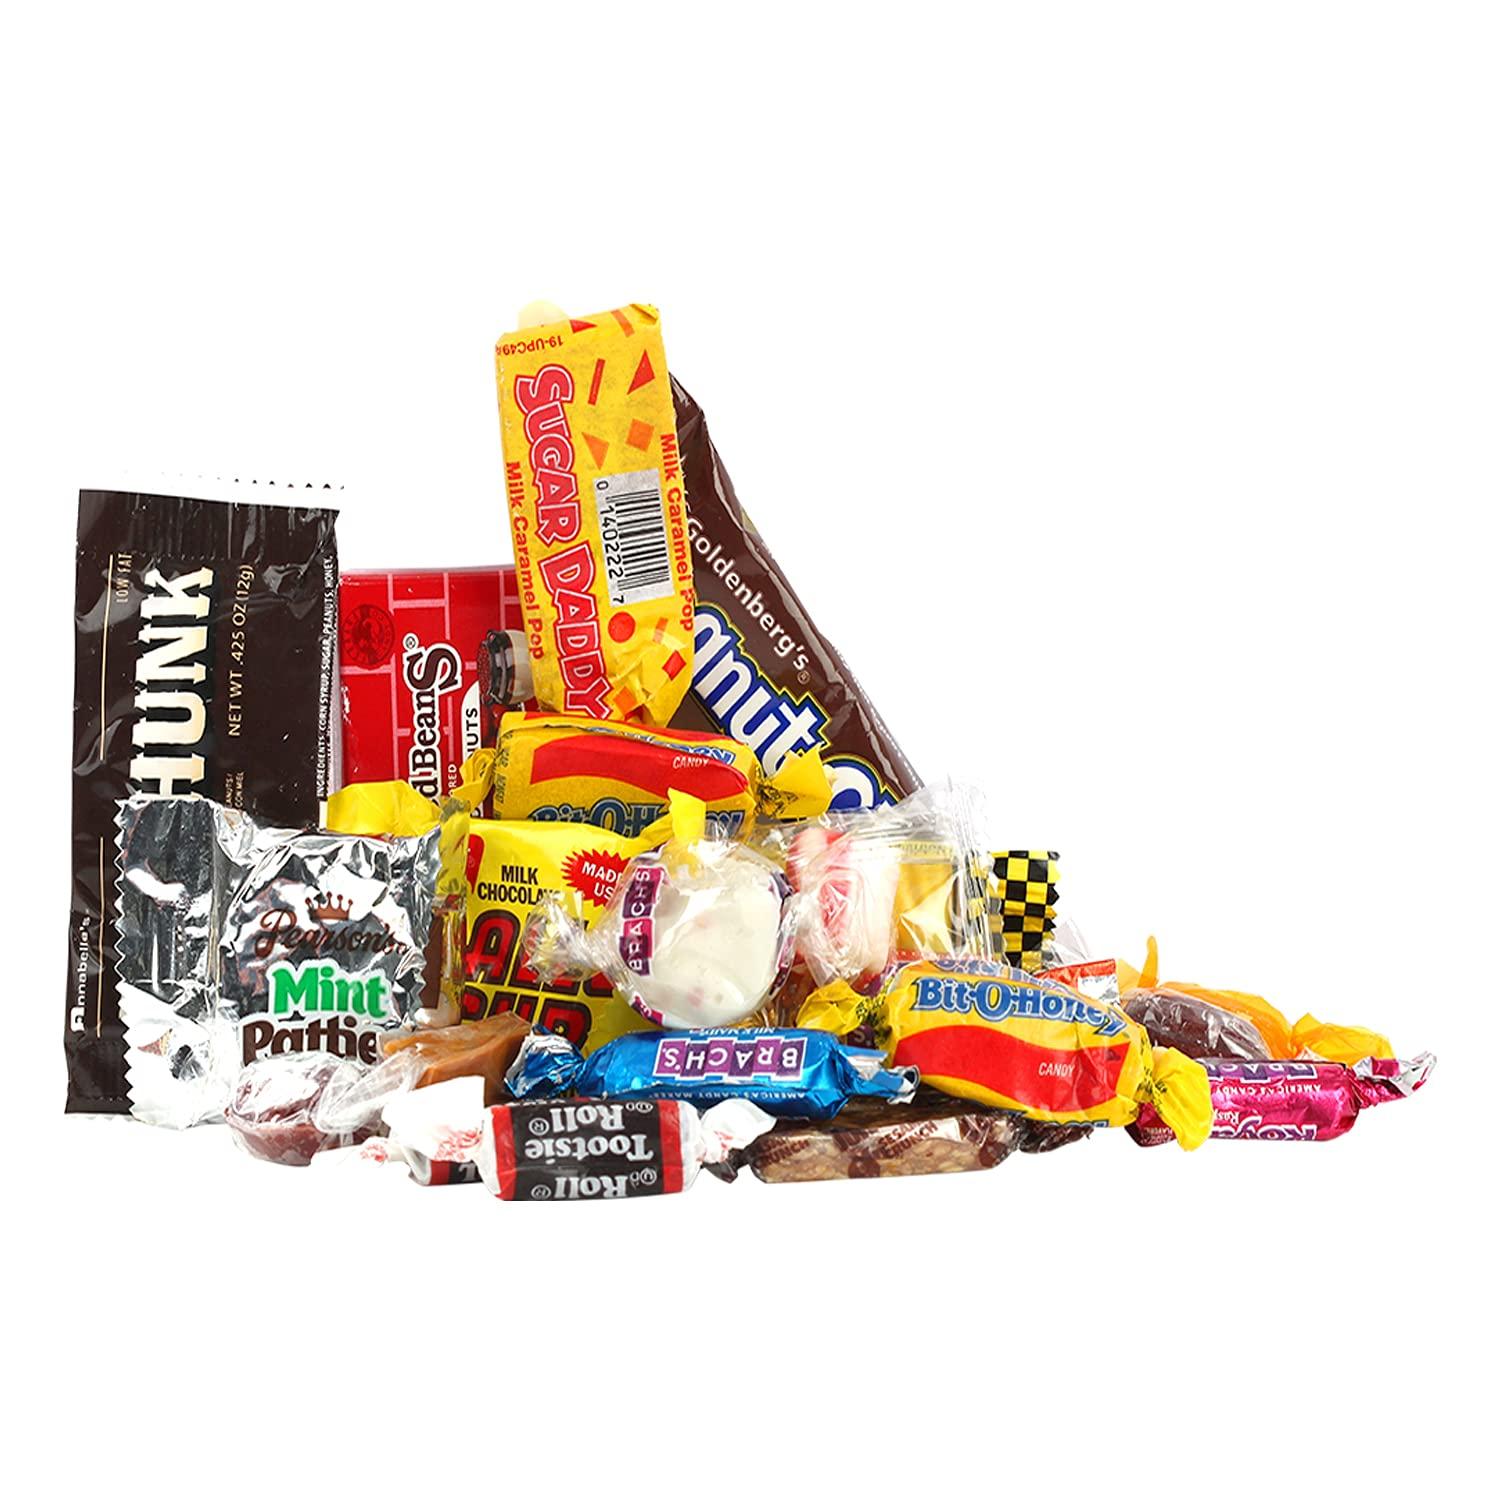 Old-Time Candy - Vintage - Nostalgic Candy Mix - Bulk Candy